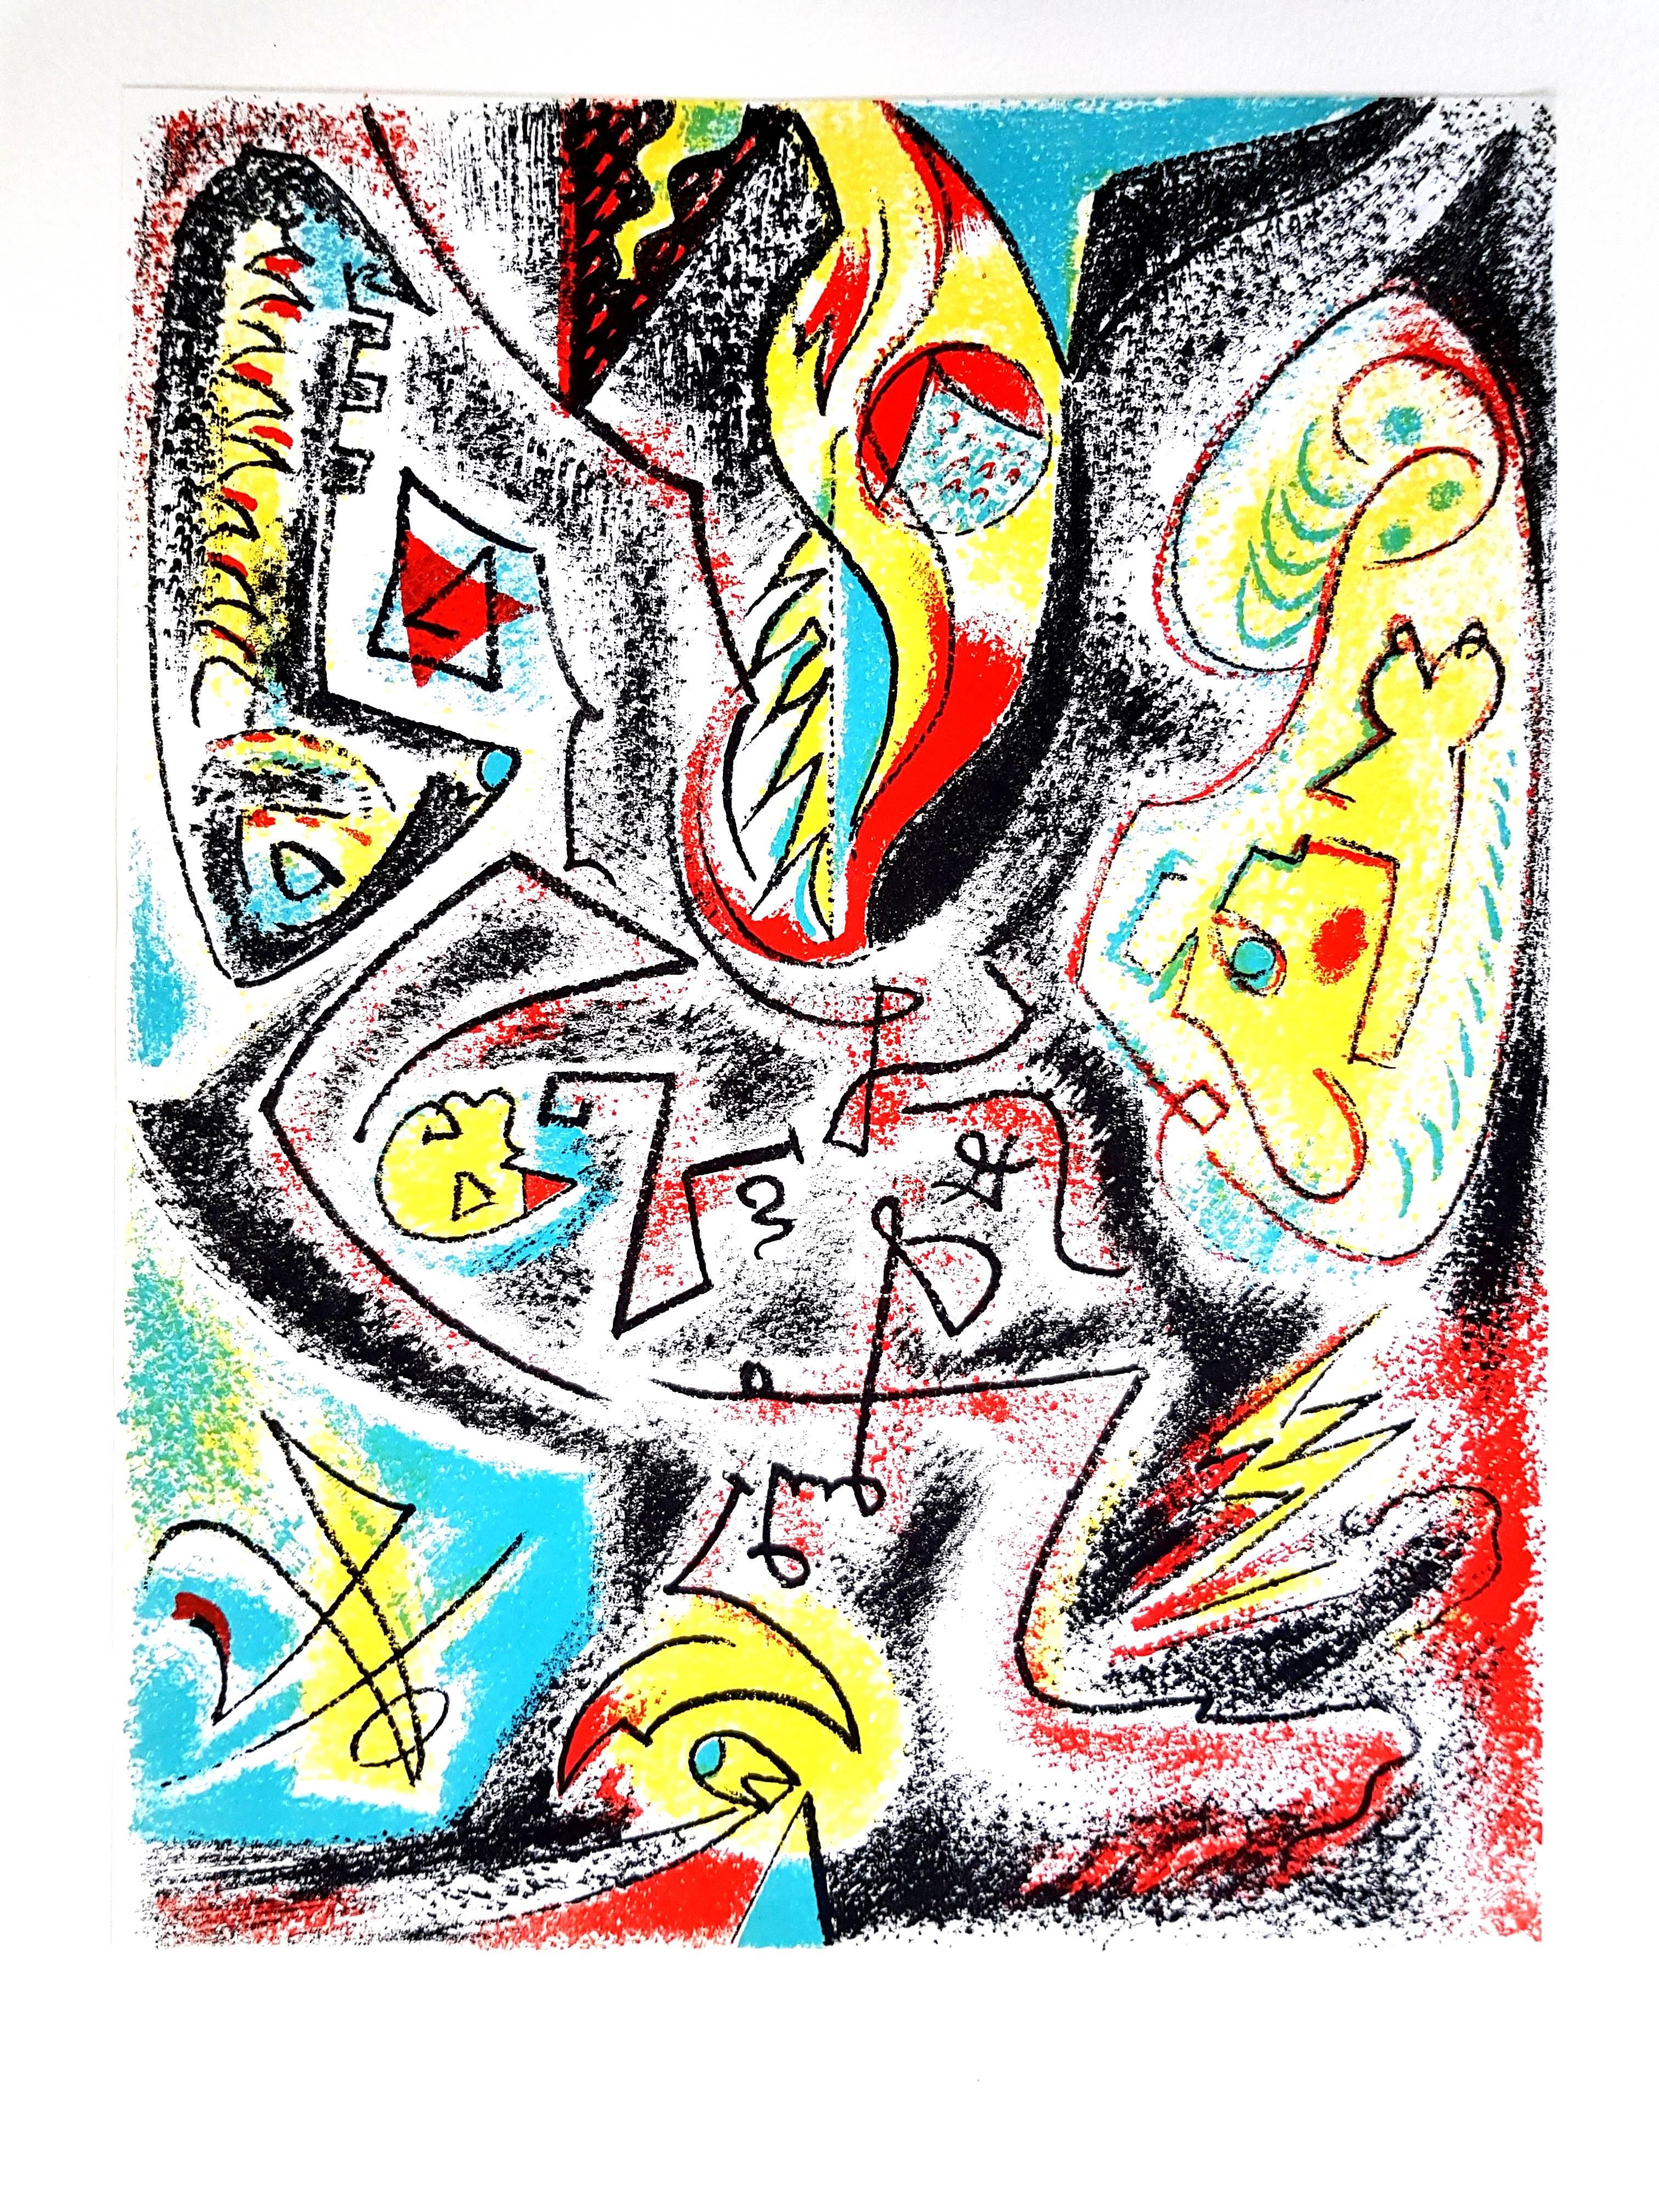 André Masson - Composition 
Lithographie originale
1969
Dimensions : 32 x 25 cm
Revue XXe Siècle 
Cahiers d'art publiés sous la direction de G. di San Lazzaro.

Peintre français né à Culan, dans le Cher. Il se rend à Paris en 1919, malgré